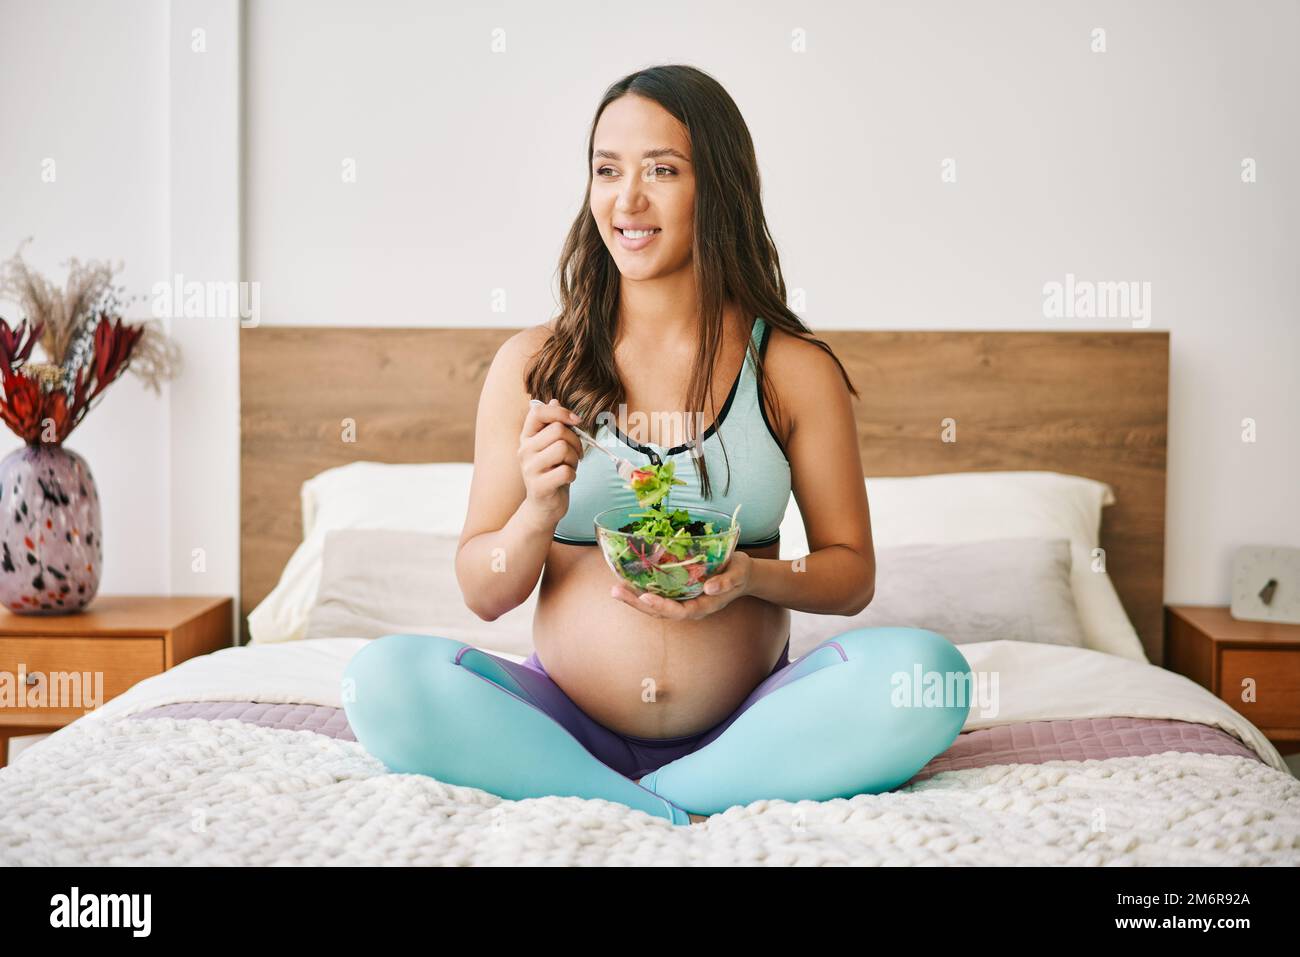 Portrait d'une jeune femme enceinte en vêtements de sport mangeant une salade fraîche assise au lit Banque D'Images